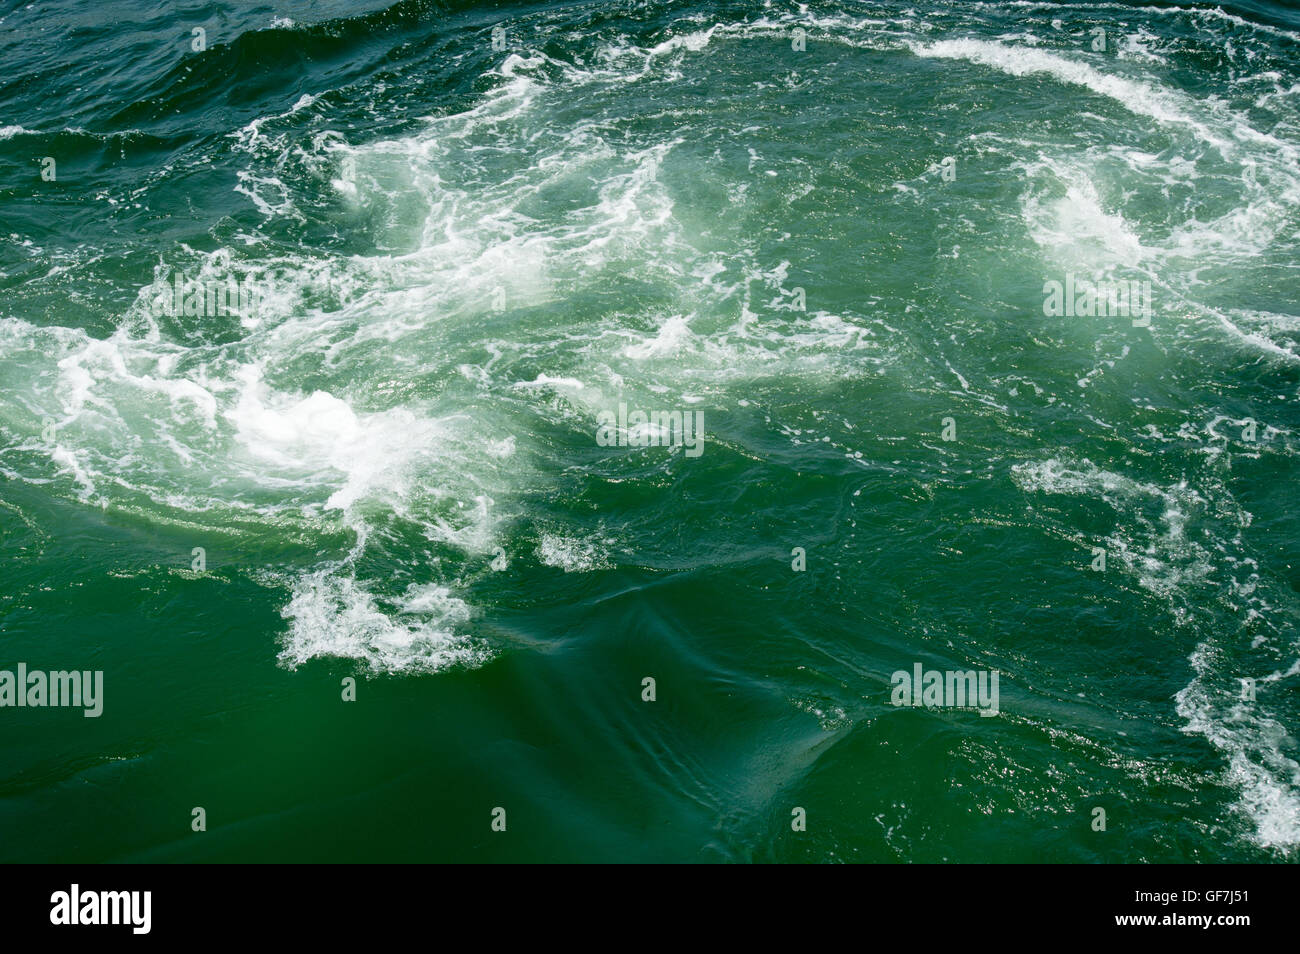 La surface de la mer avec des vagues écumeuses Banque D'Images